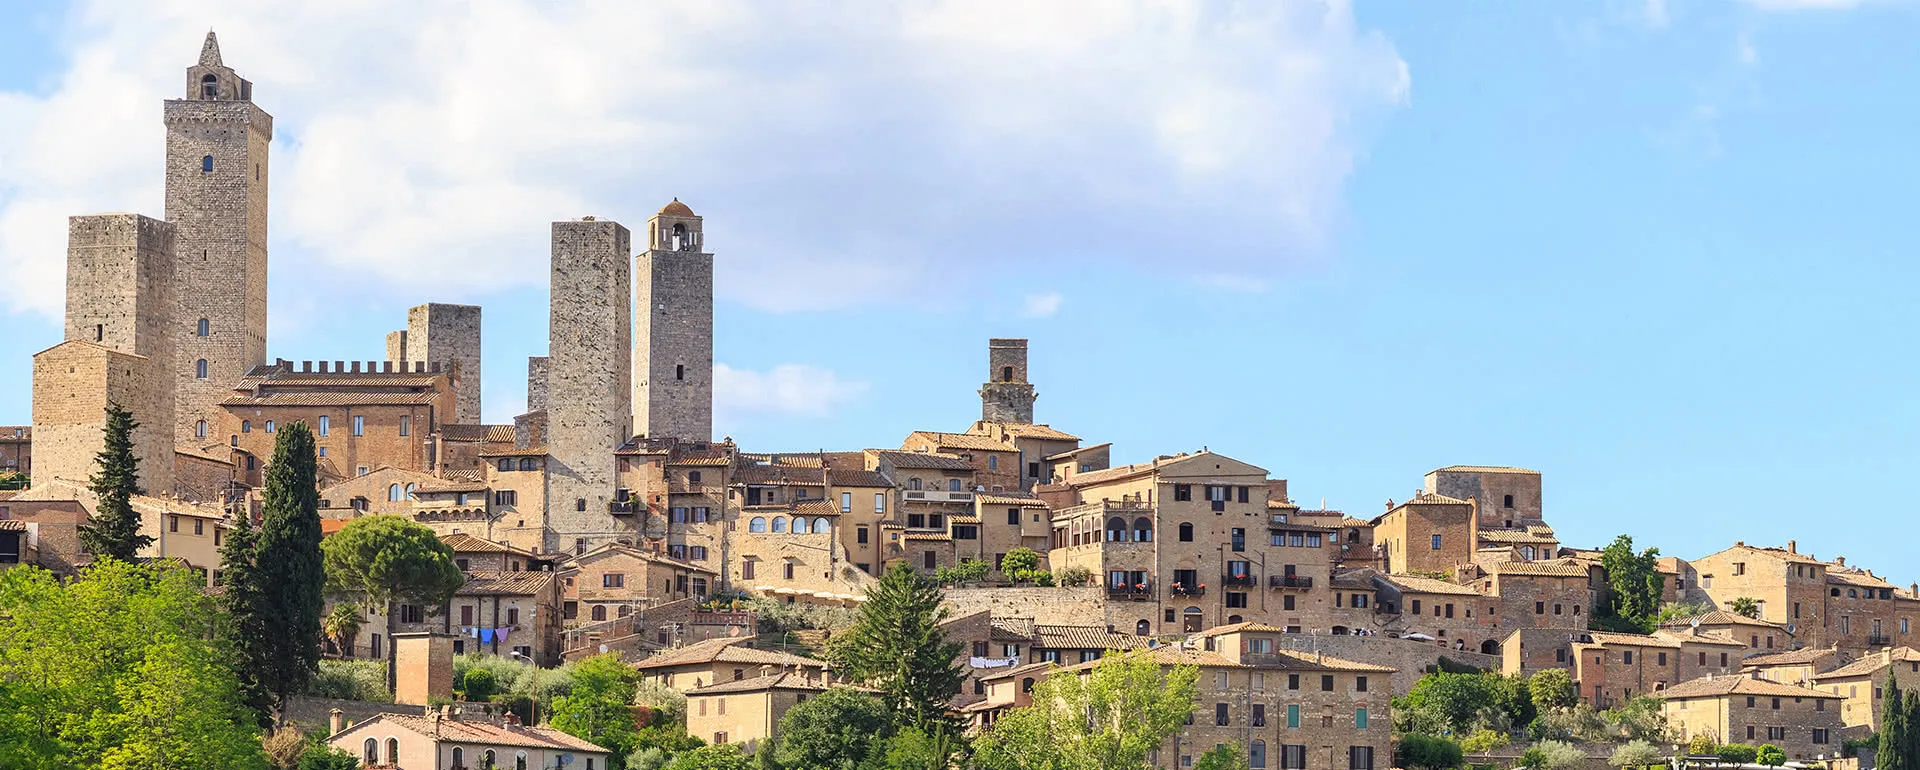 San Gimignano - das Reiseziel mit Jugendherbergen